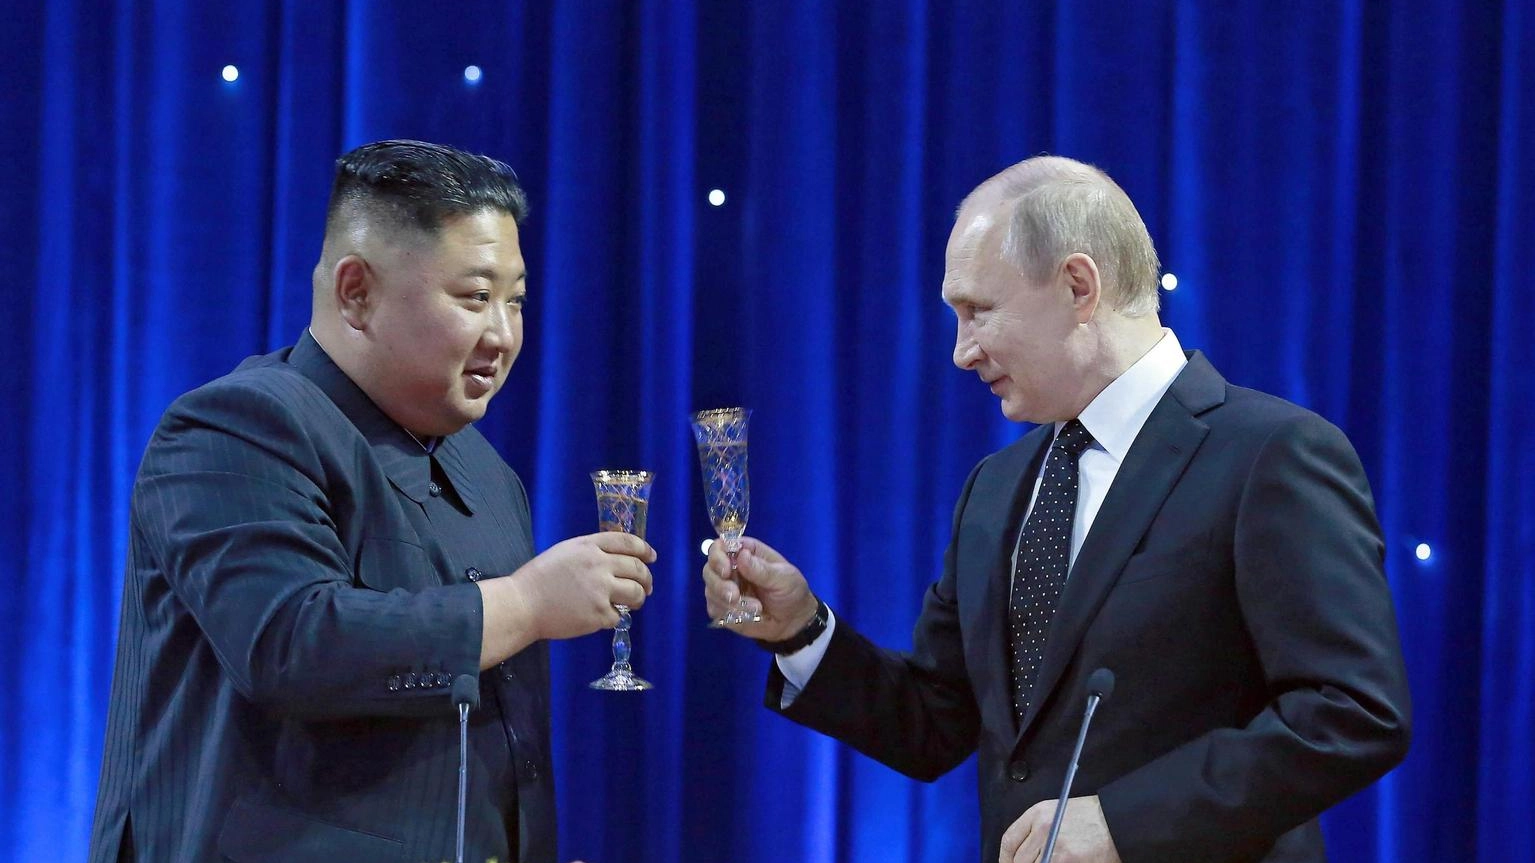 Nyt, 'Kim andrà da Putin in Russia per discutere di armi'